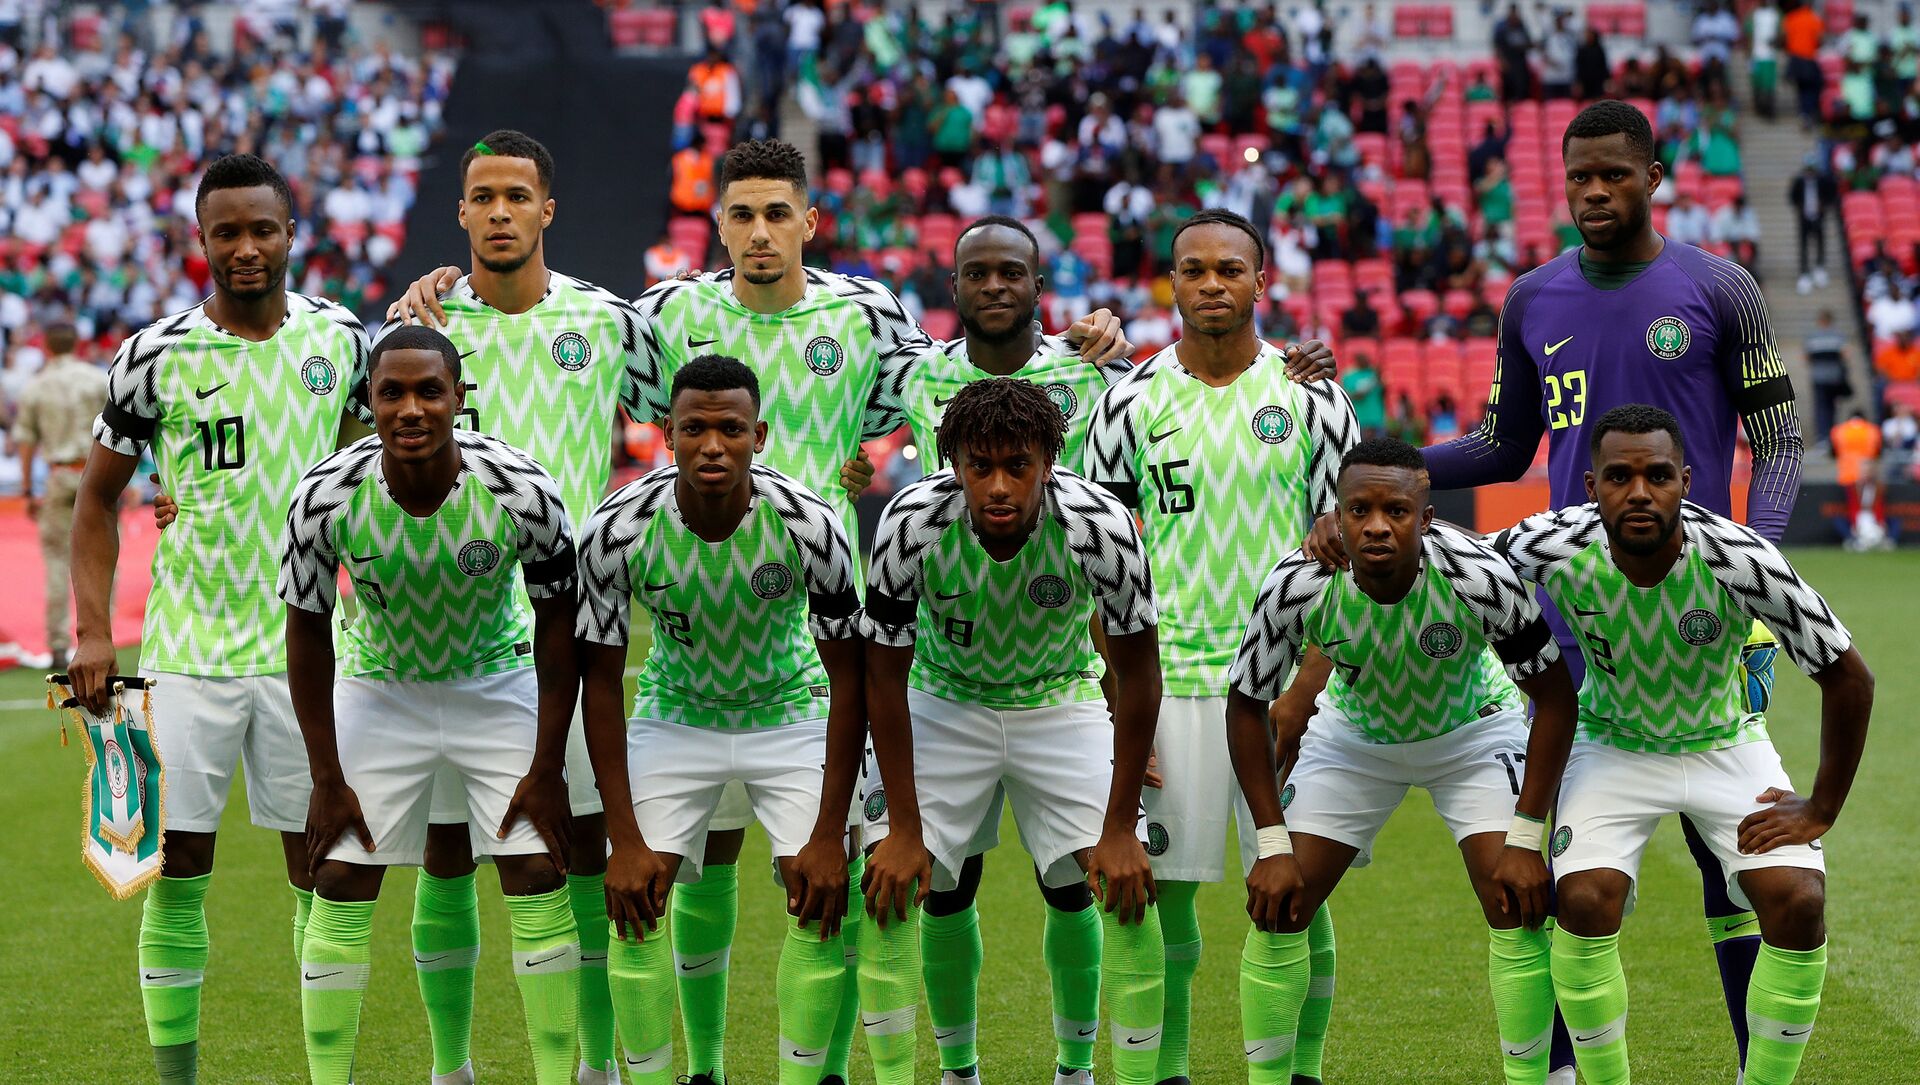 Los nigerianos ya ganaron Copa: la mejor casaca del Mundial - 07.06.2018, Mundo